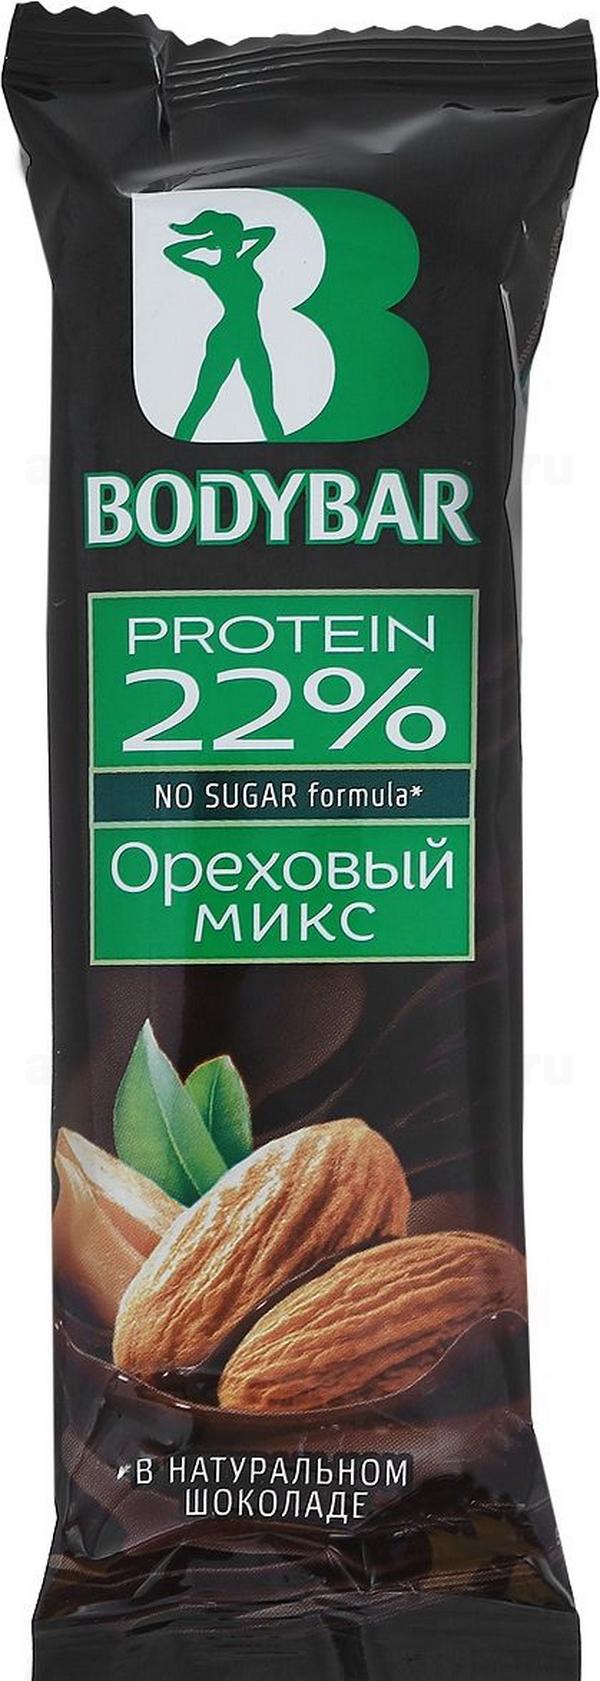 Bodybar батончик с высоким содержанием протеина ореховый микс в горьком шоколаде 50 г